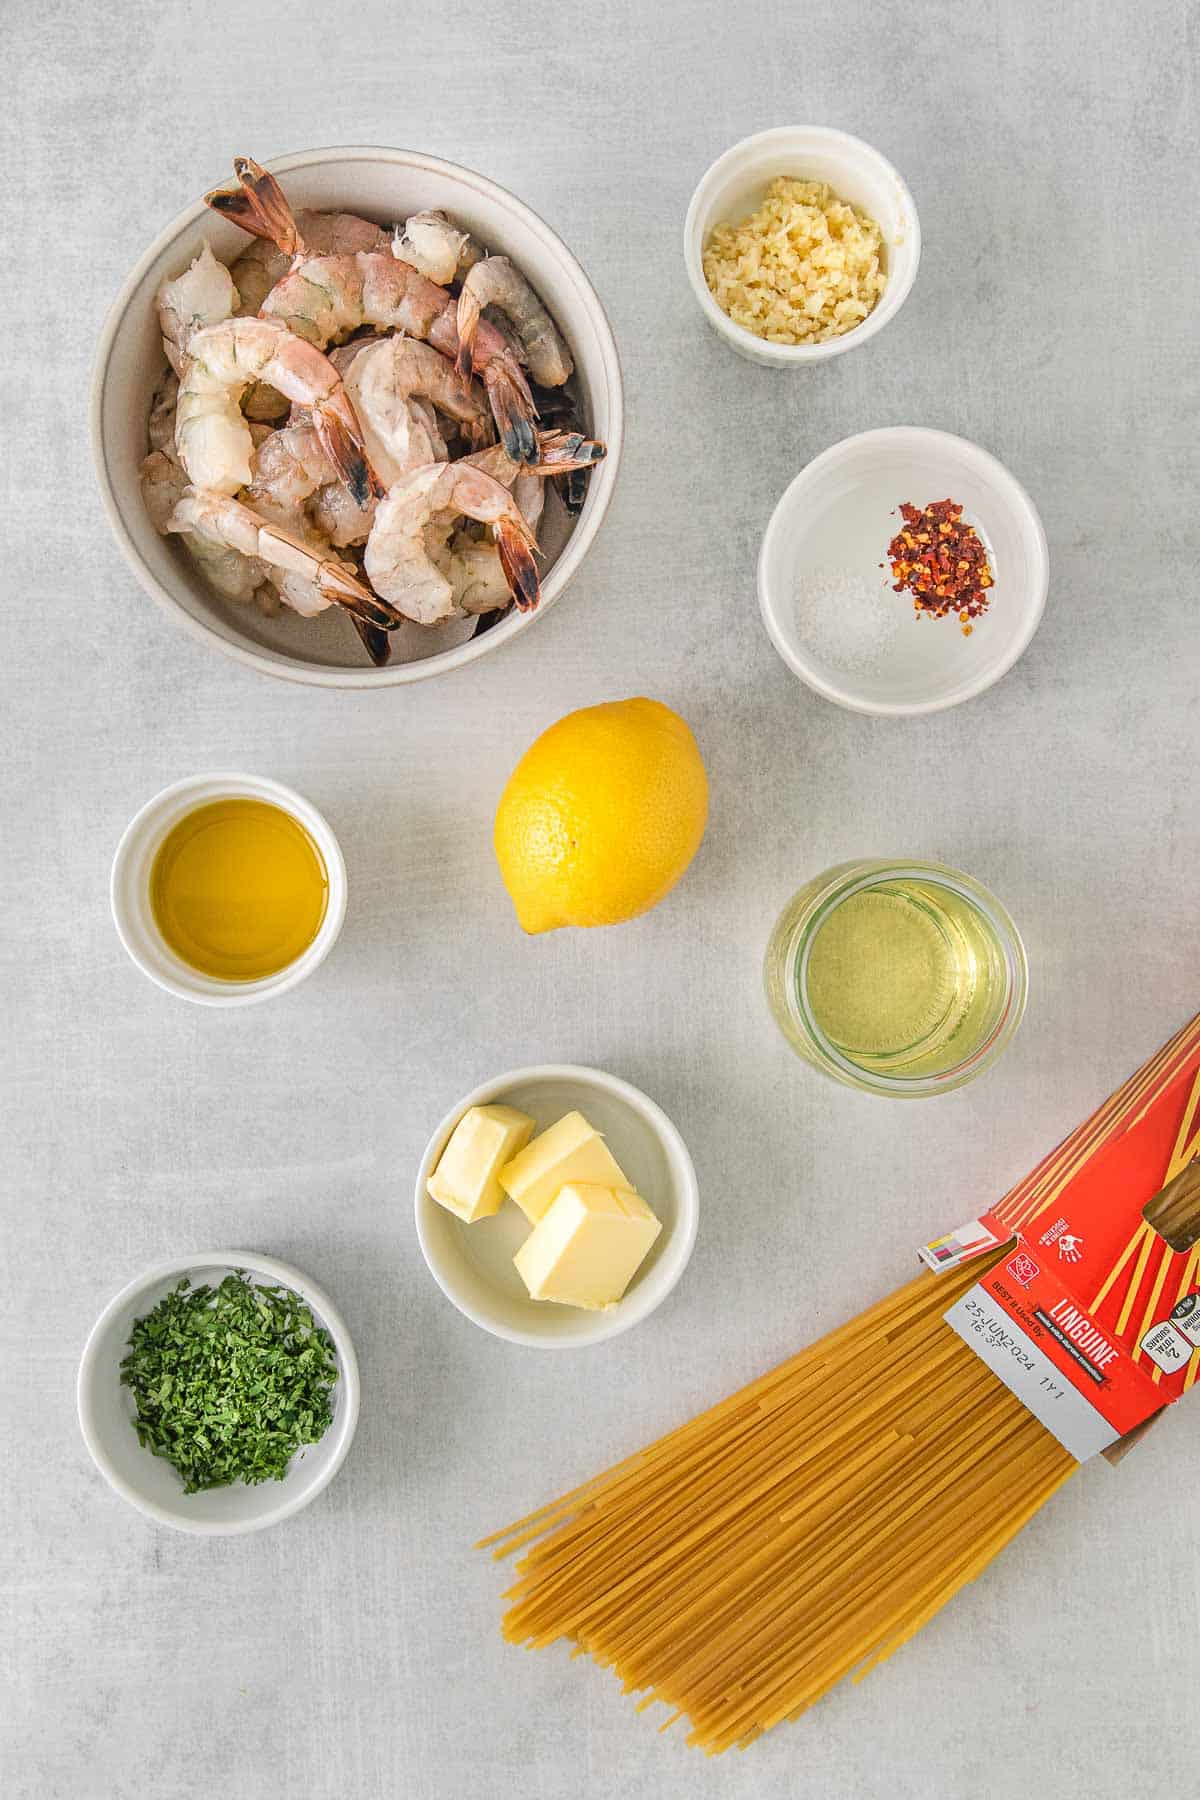 Ingredients for shrimp scampi - raw shrimp, butter, linguine noodles, parsley, lemon and oil.